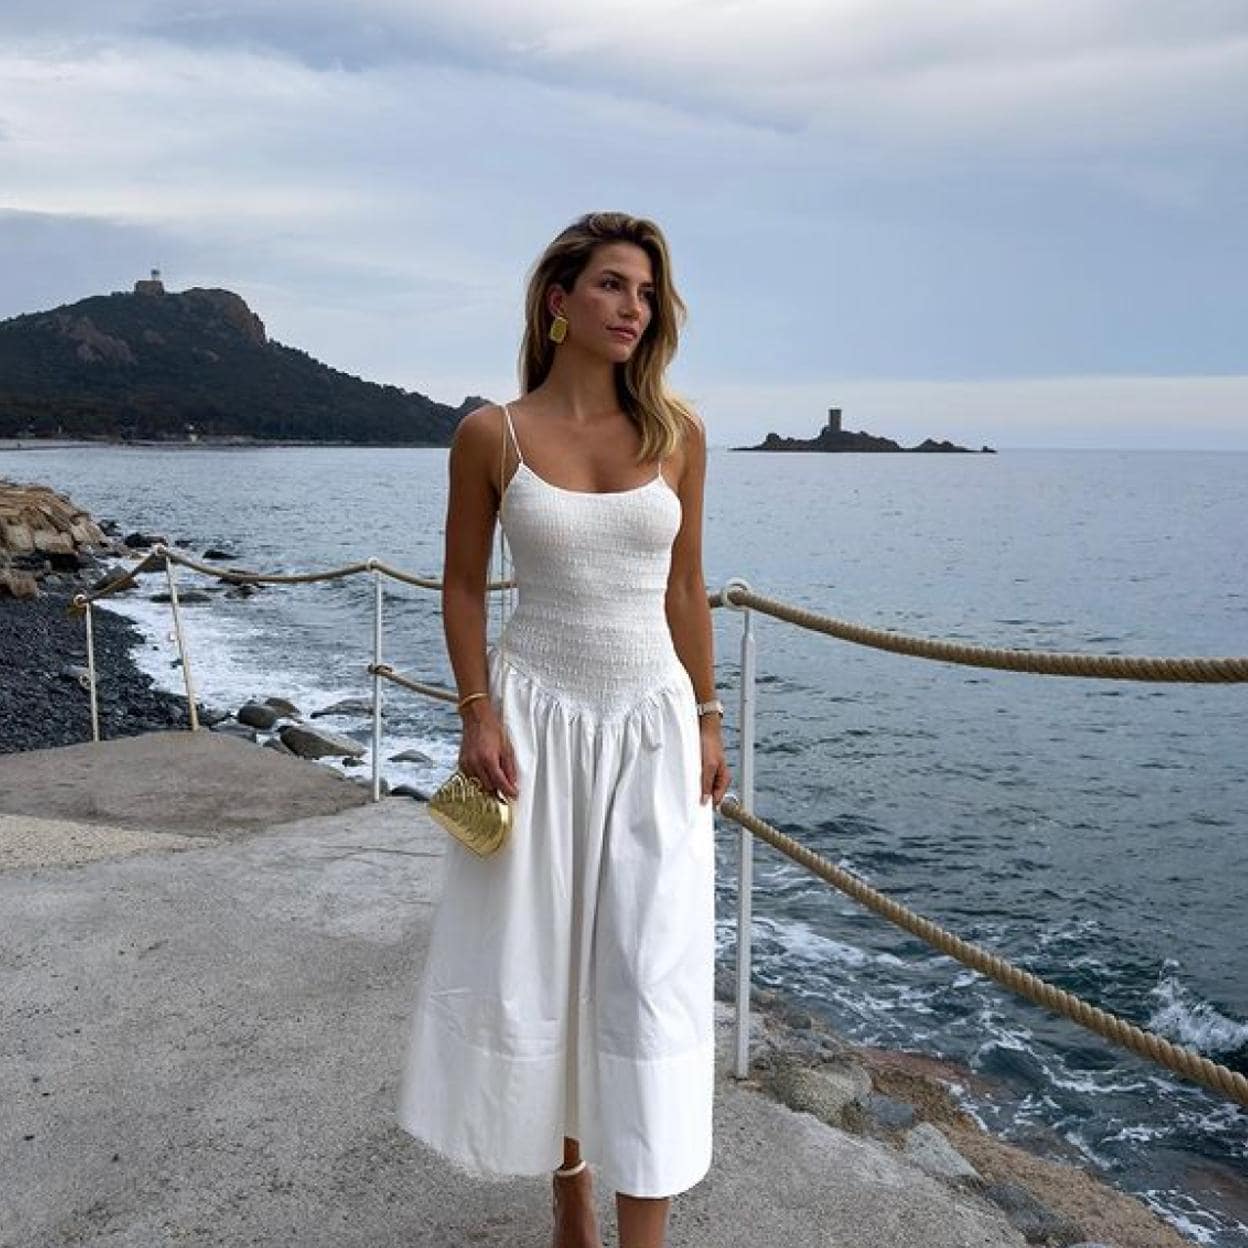 Tenemos vestido blanco favorito de las danesas para el verano | Mujer Hoy